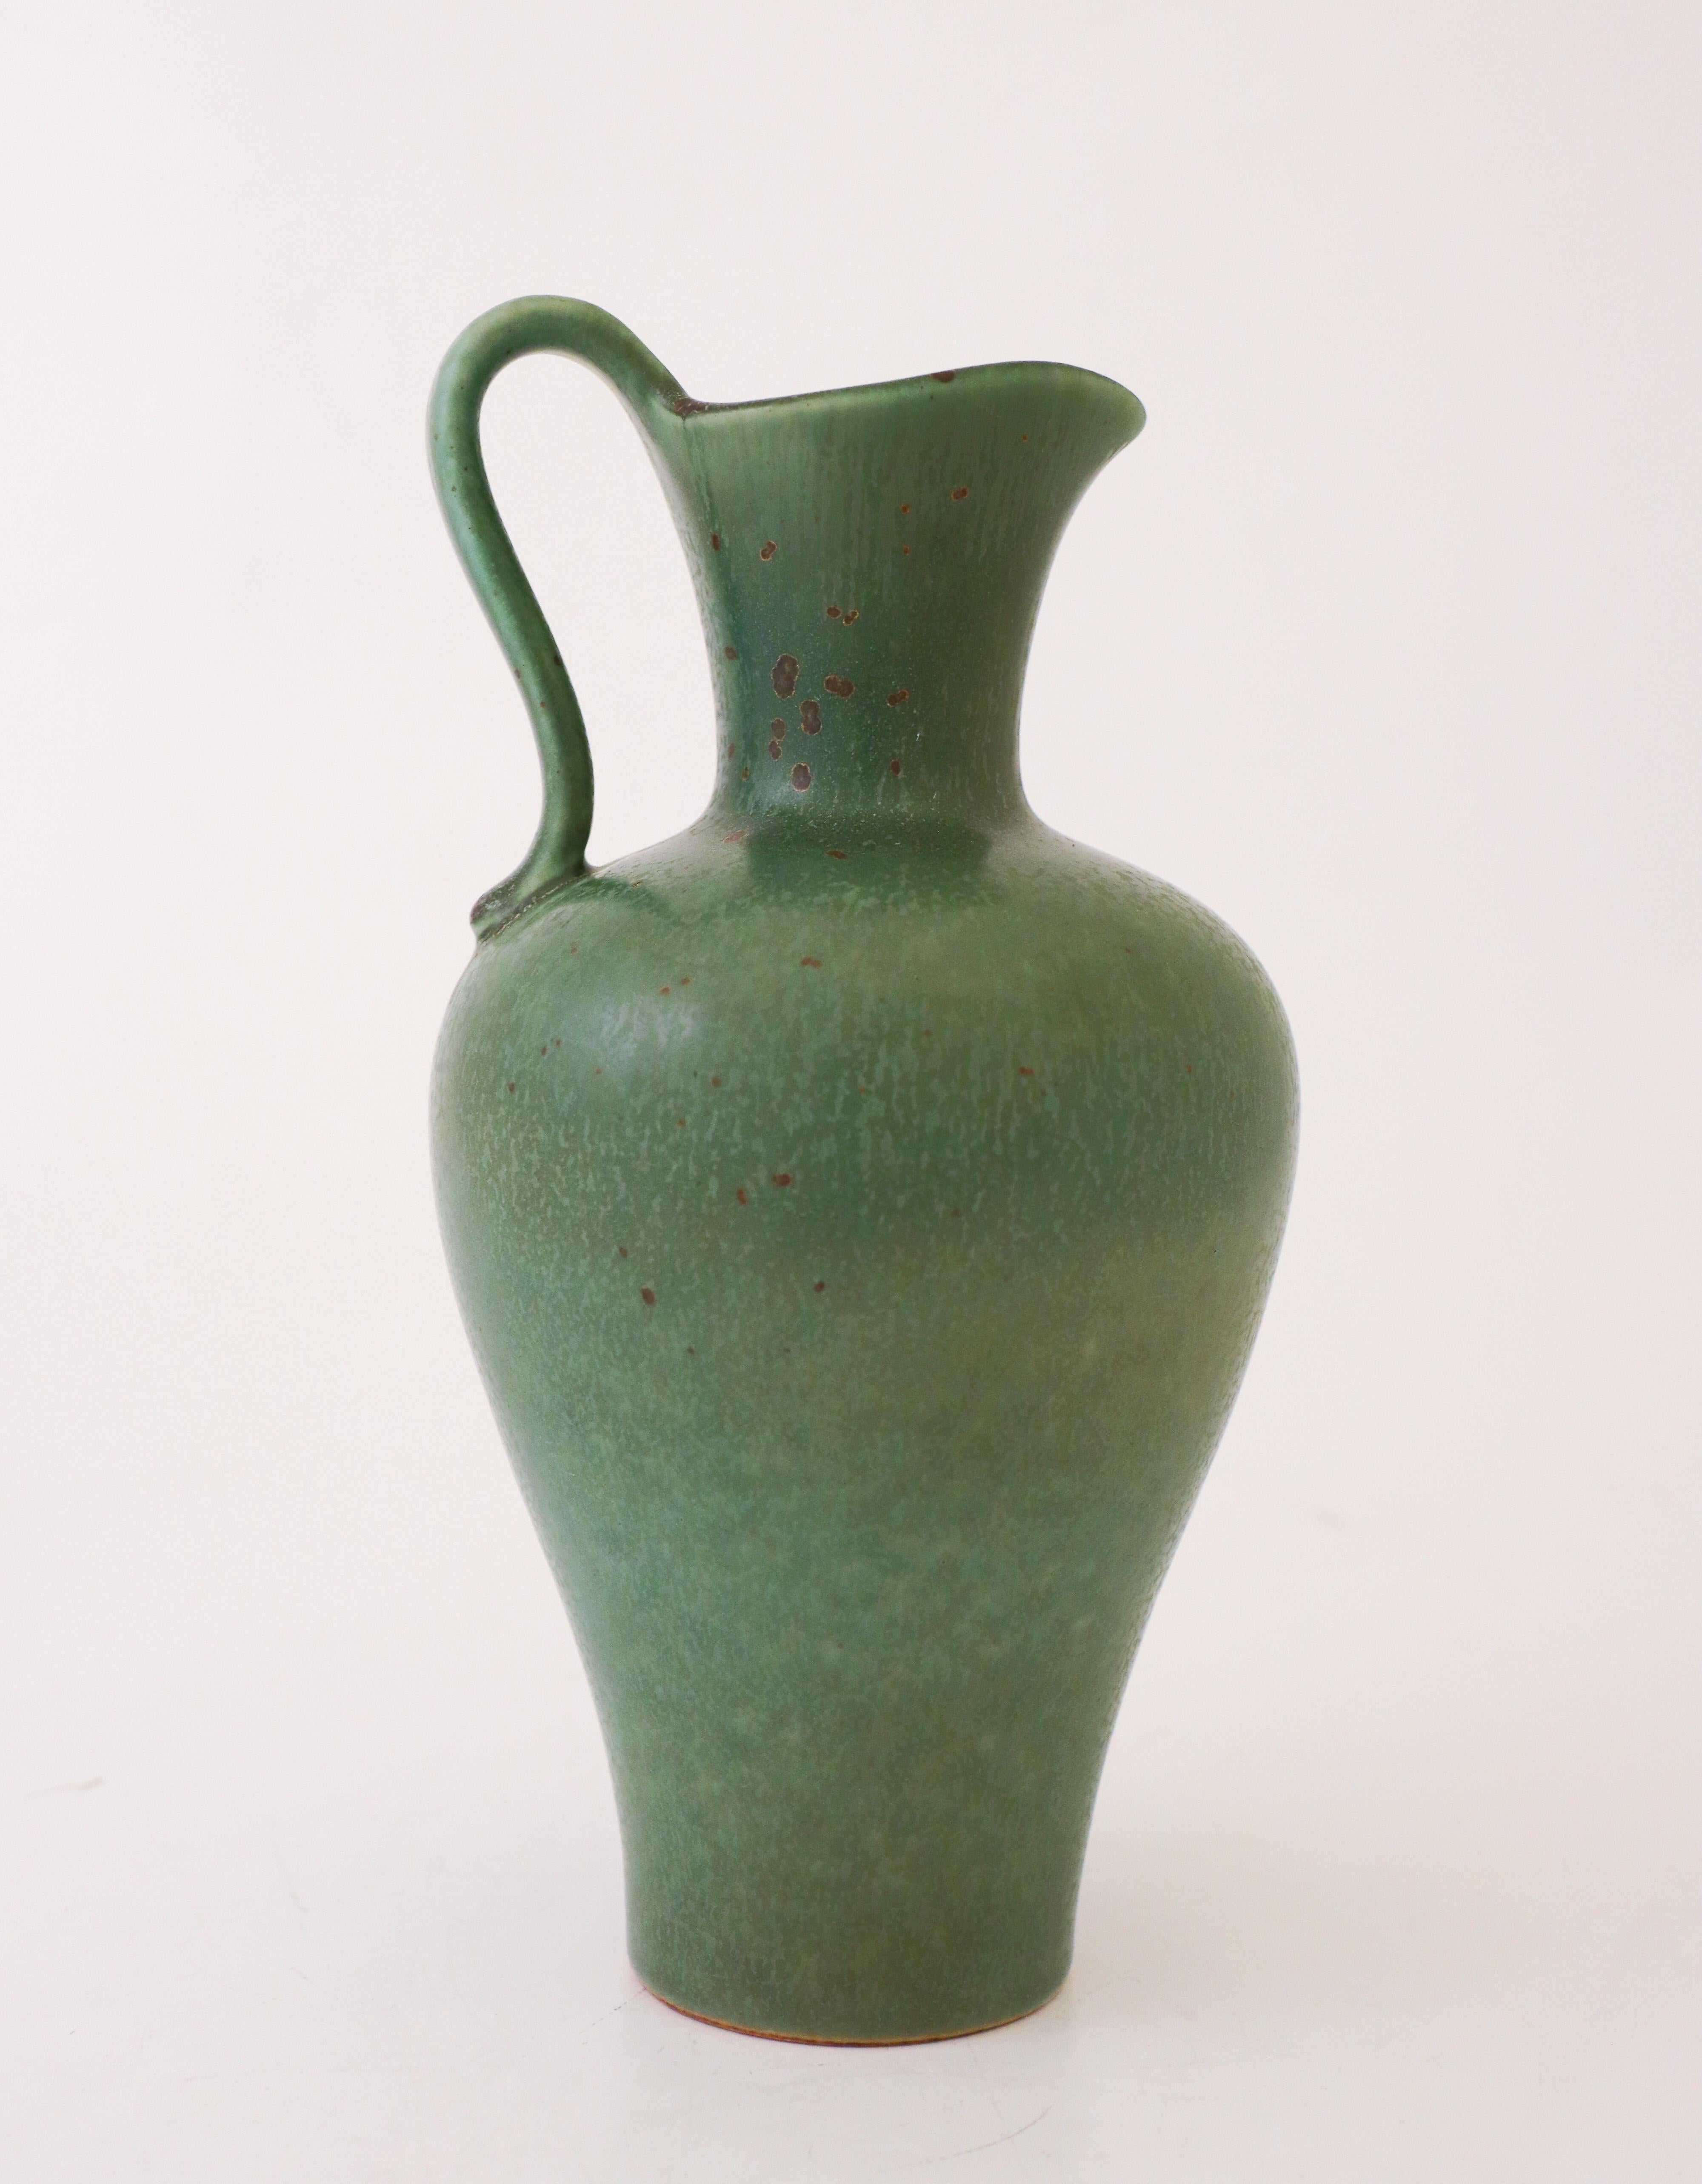 Eine tiefgrüne Vase mit schöner Glasur, entworfen von Gunnar Nylund in Rörstrand. Die Vase ist 22,5 cm (9